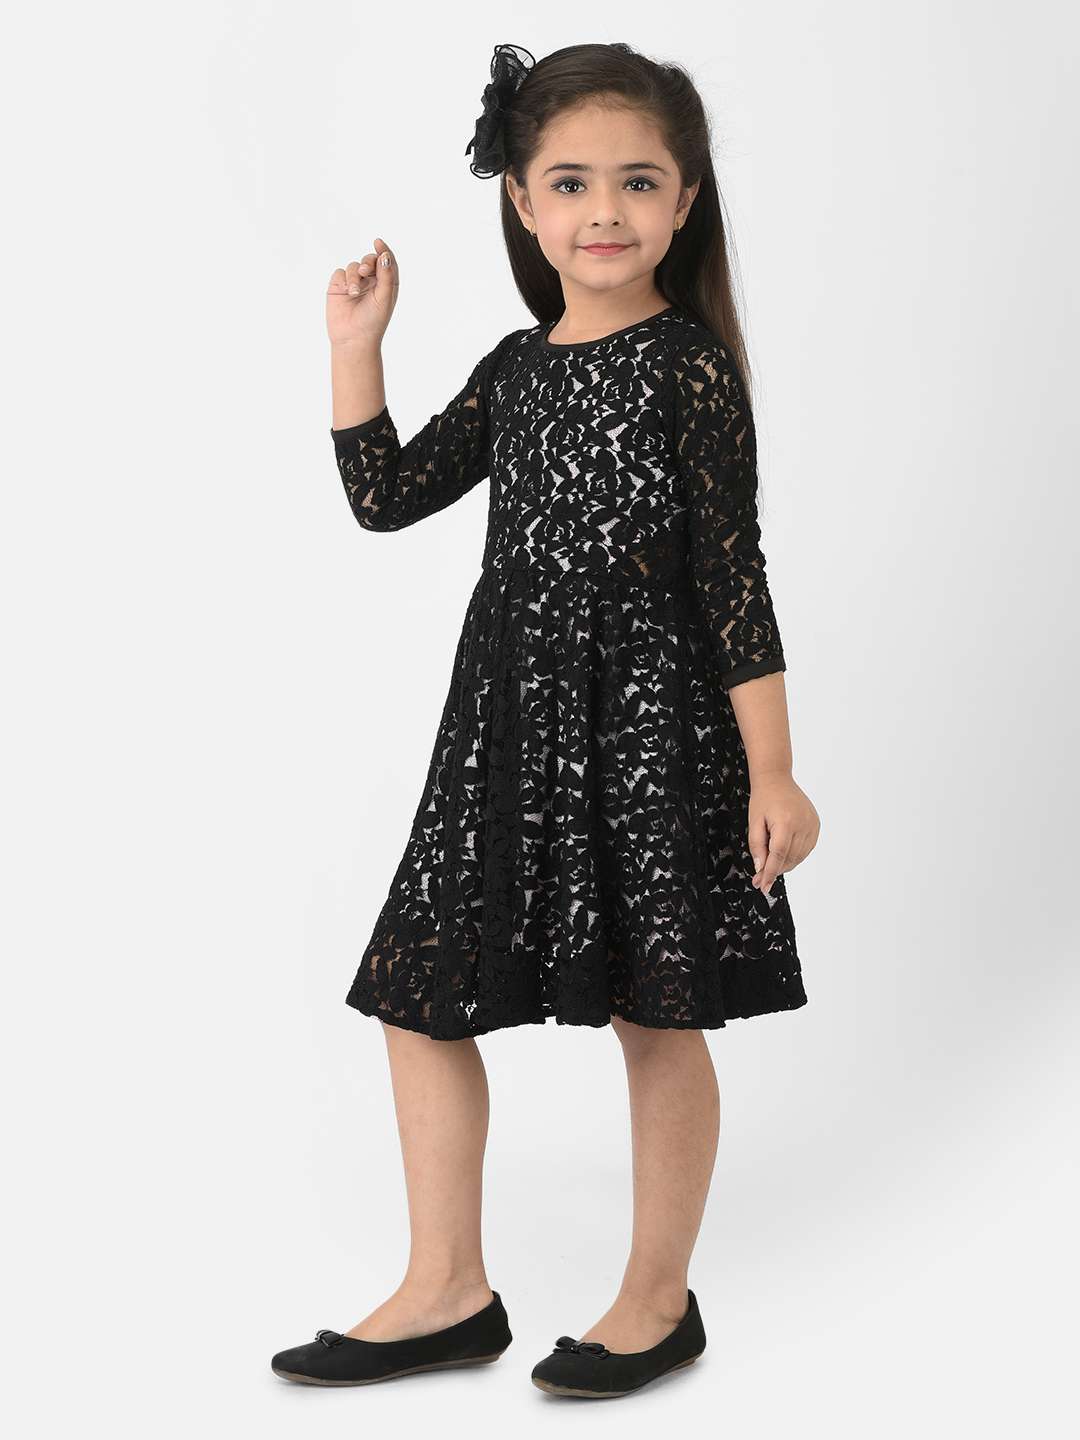 WHOOSEE Women Gown Black Dress - Buy WHOOSEE Women Gown Black Dress Online  at Best Prices in India | Flipkart.com